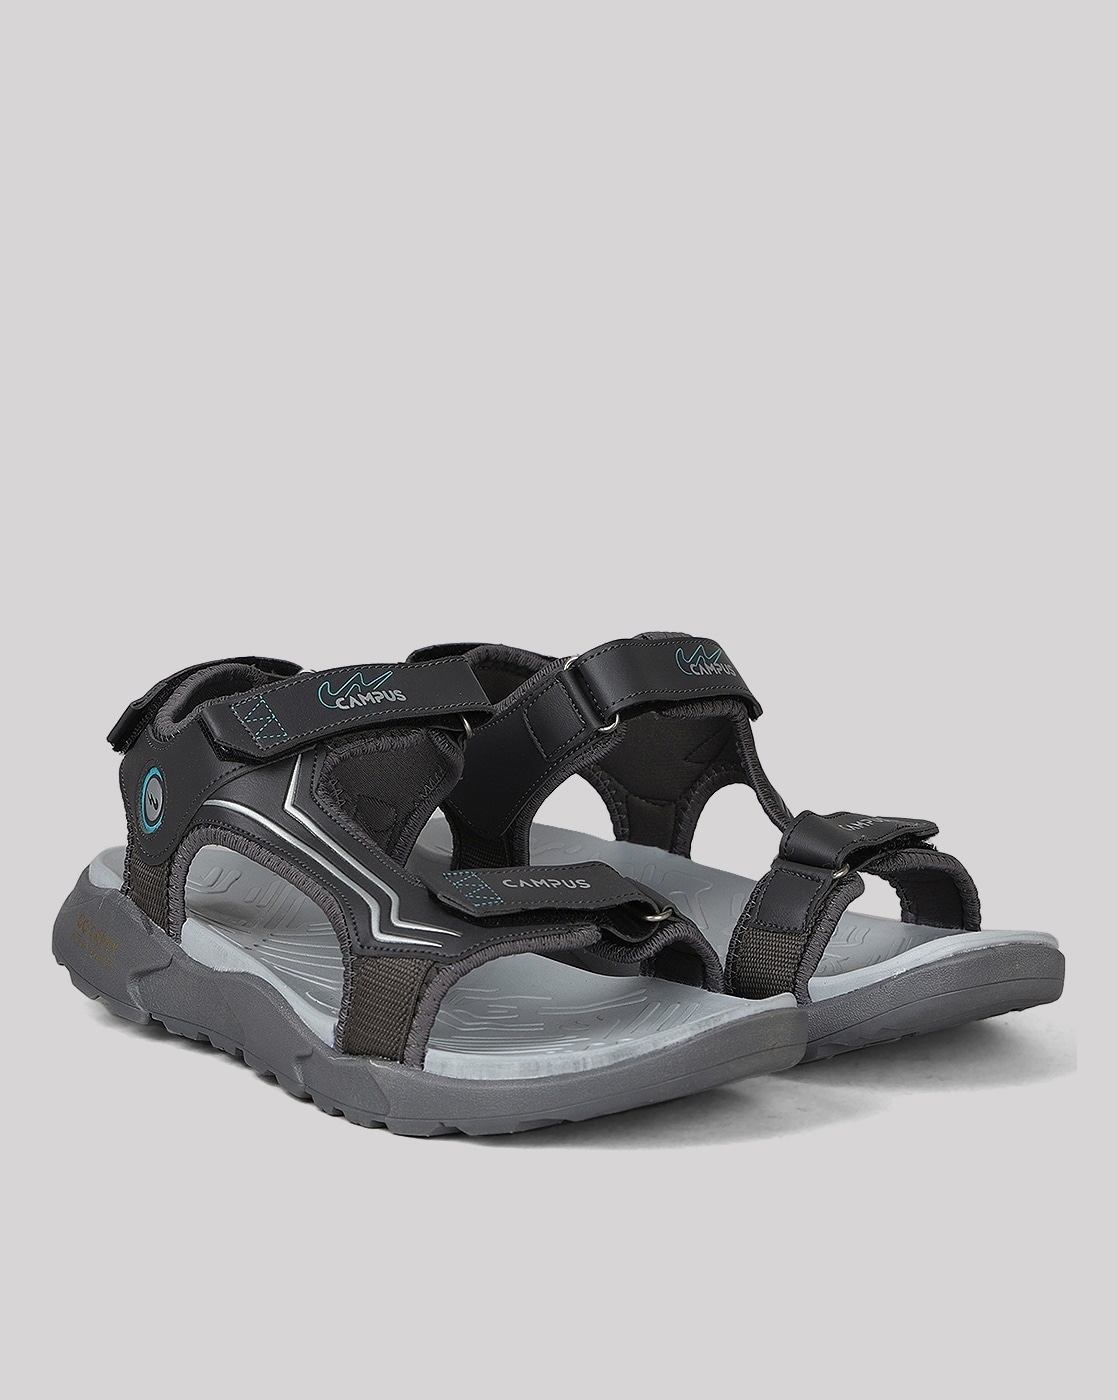 Motif-detail sandals - Dark grey/Marvel - Kids | H&M